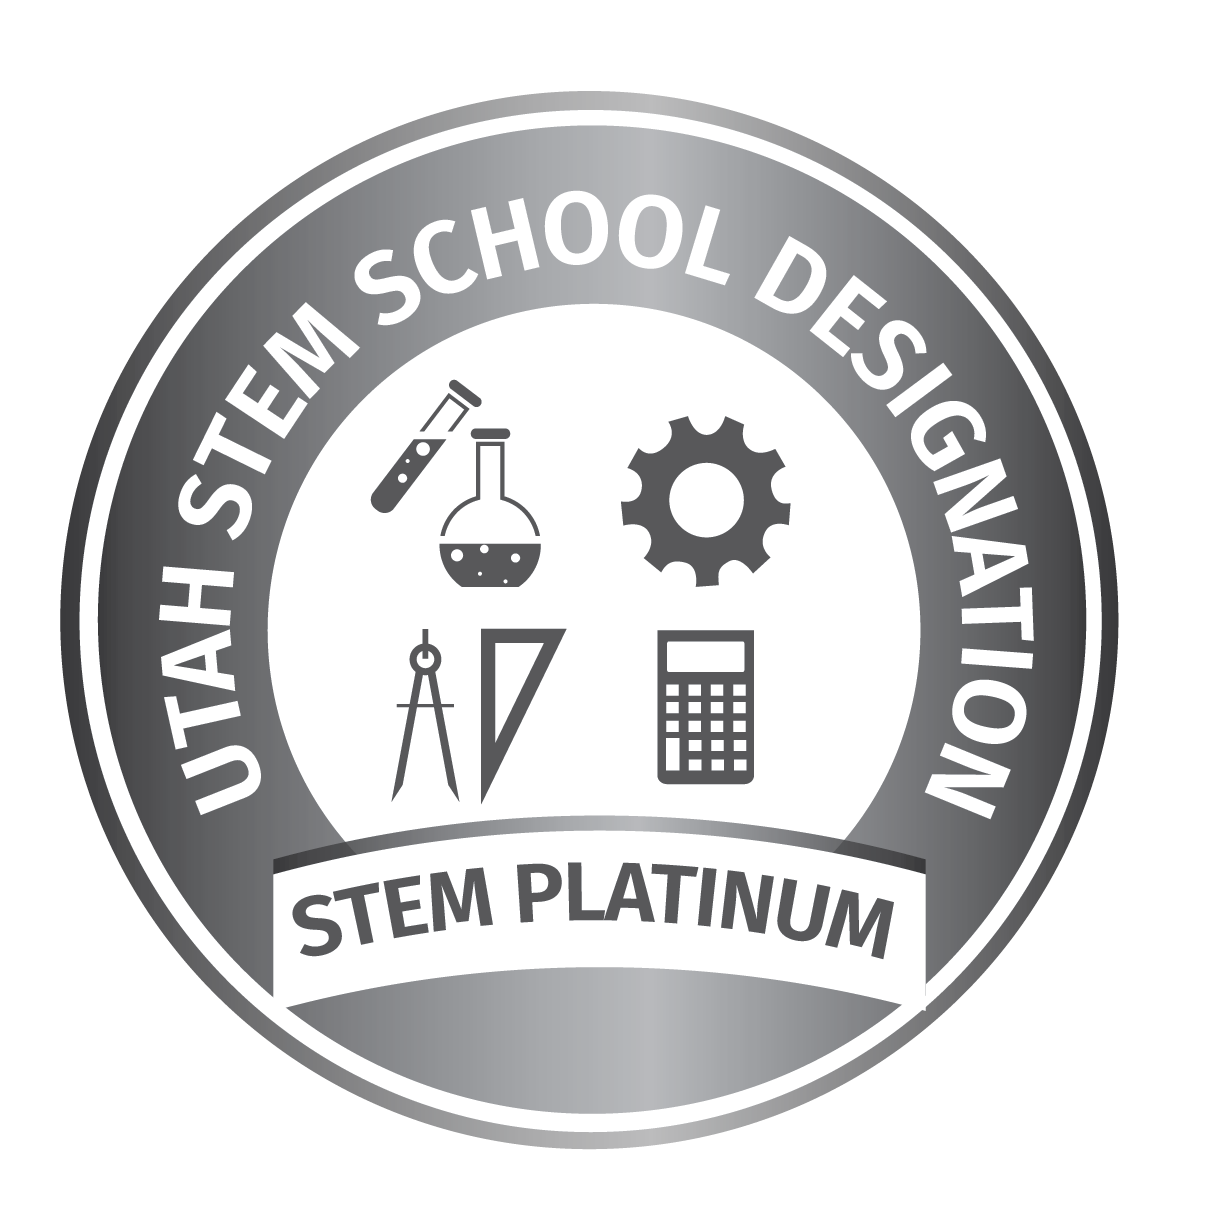 Utah Stem School Platinum level logo.